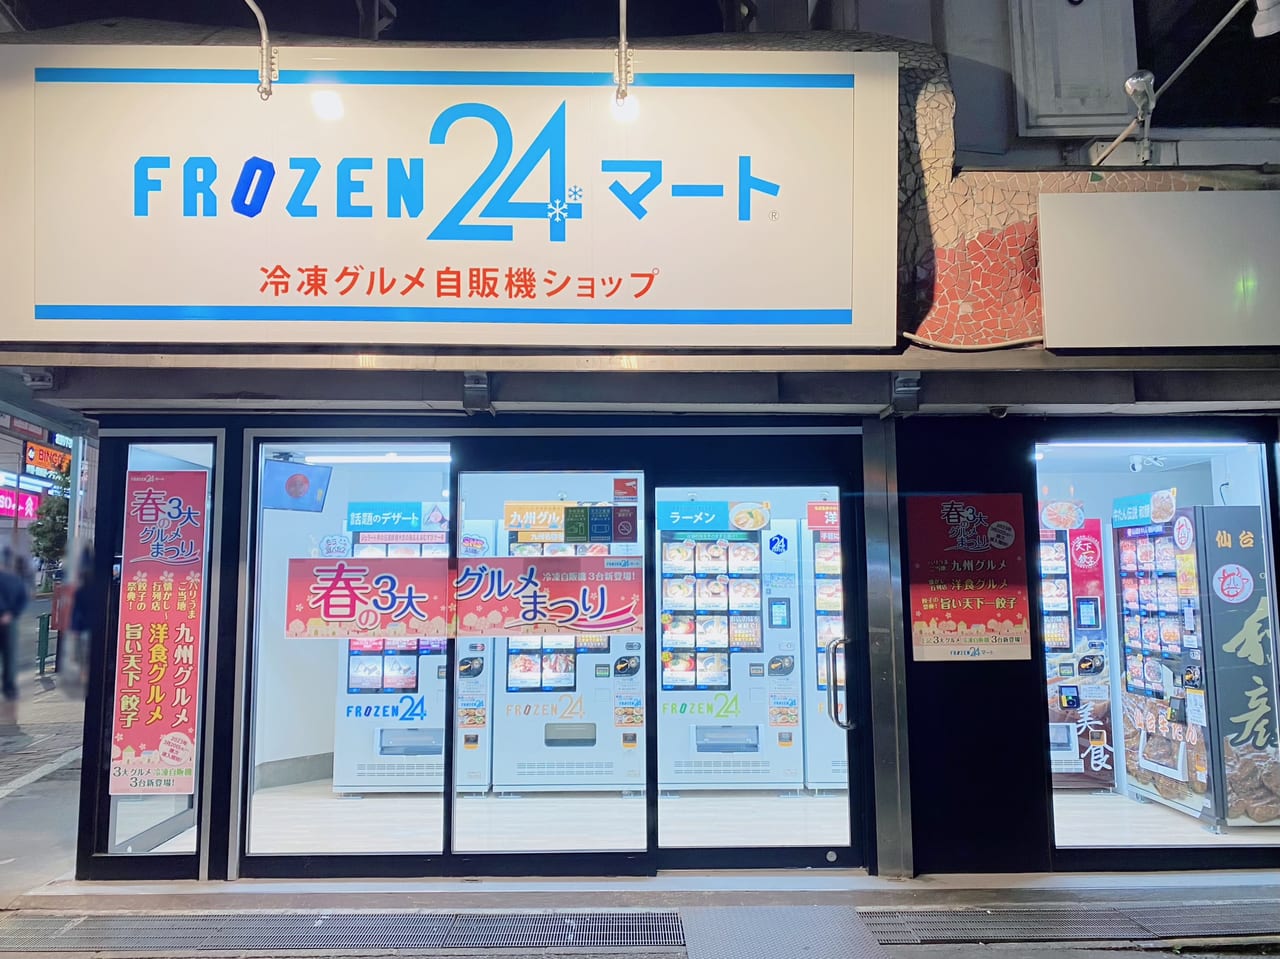 大森駅の冷凍自販機FROZEN24